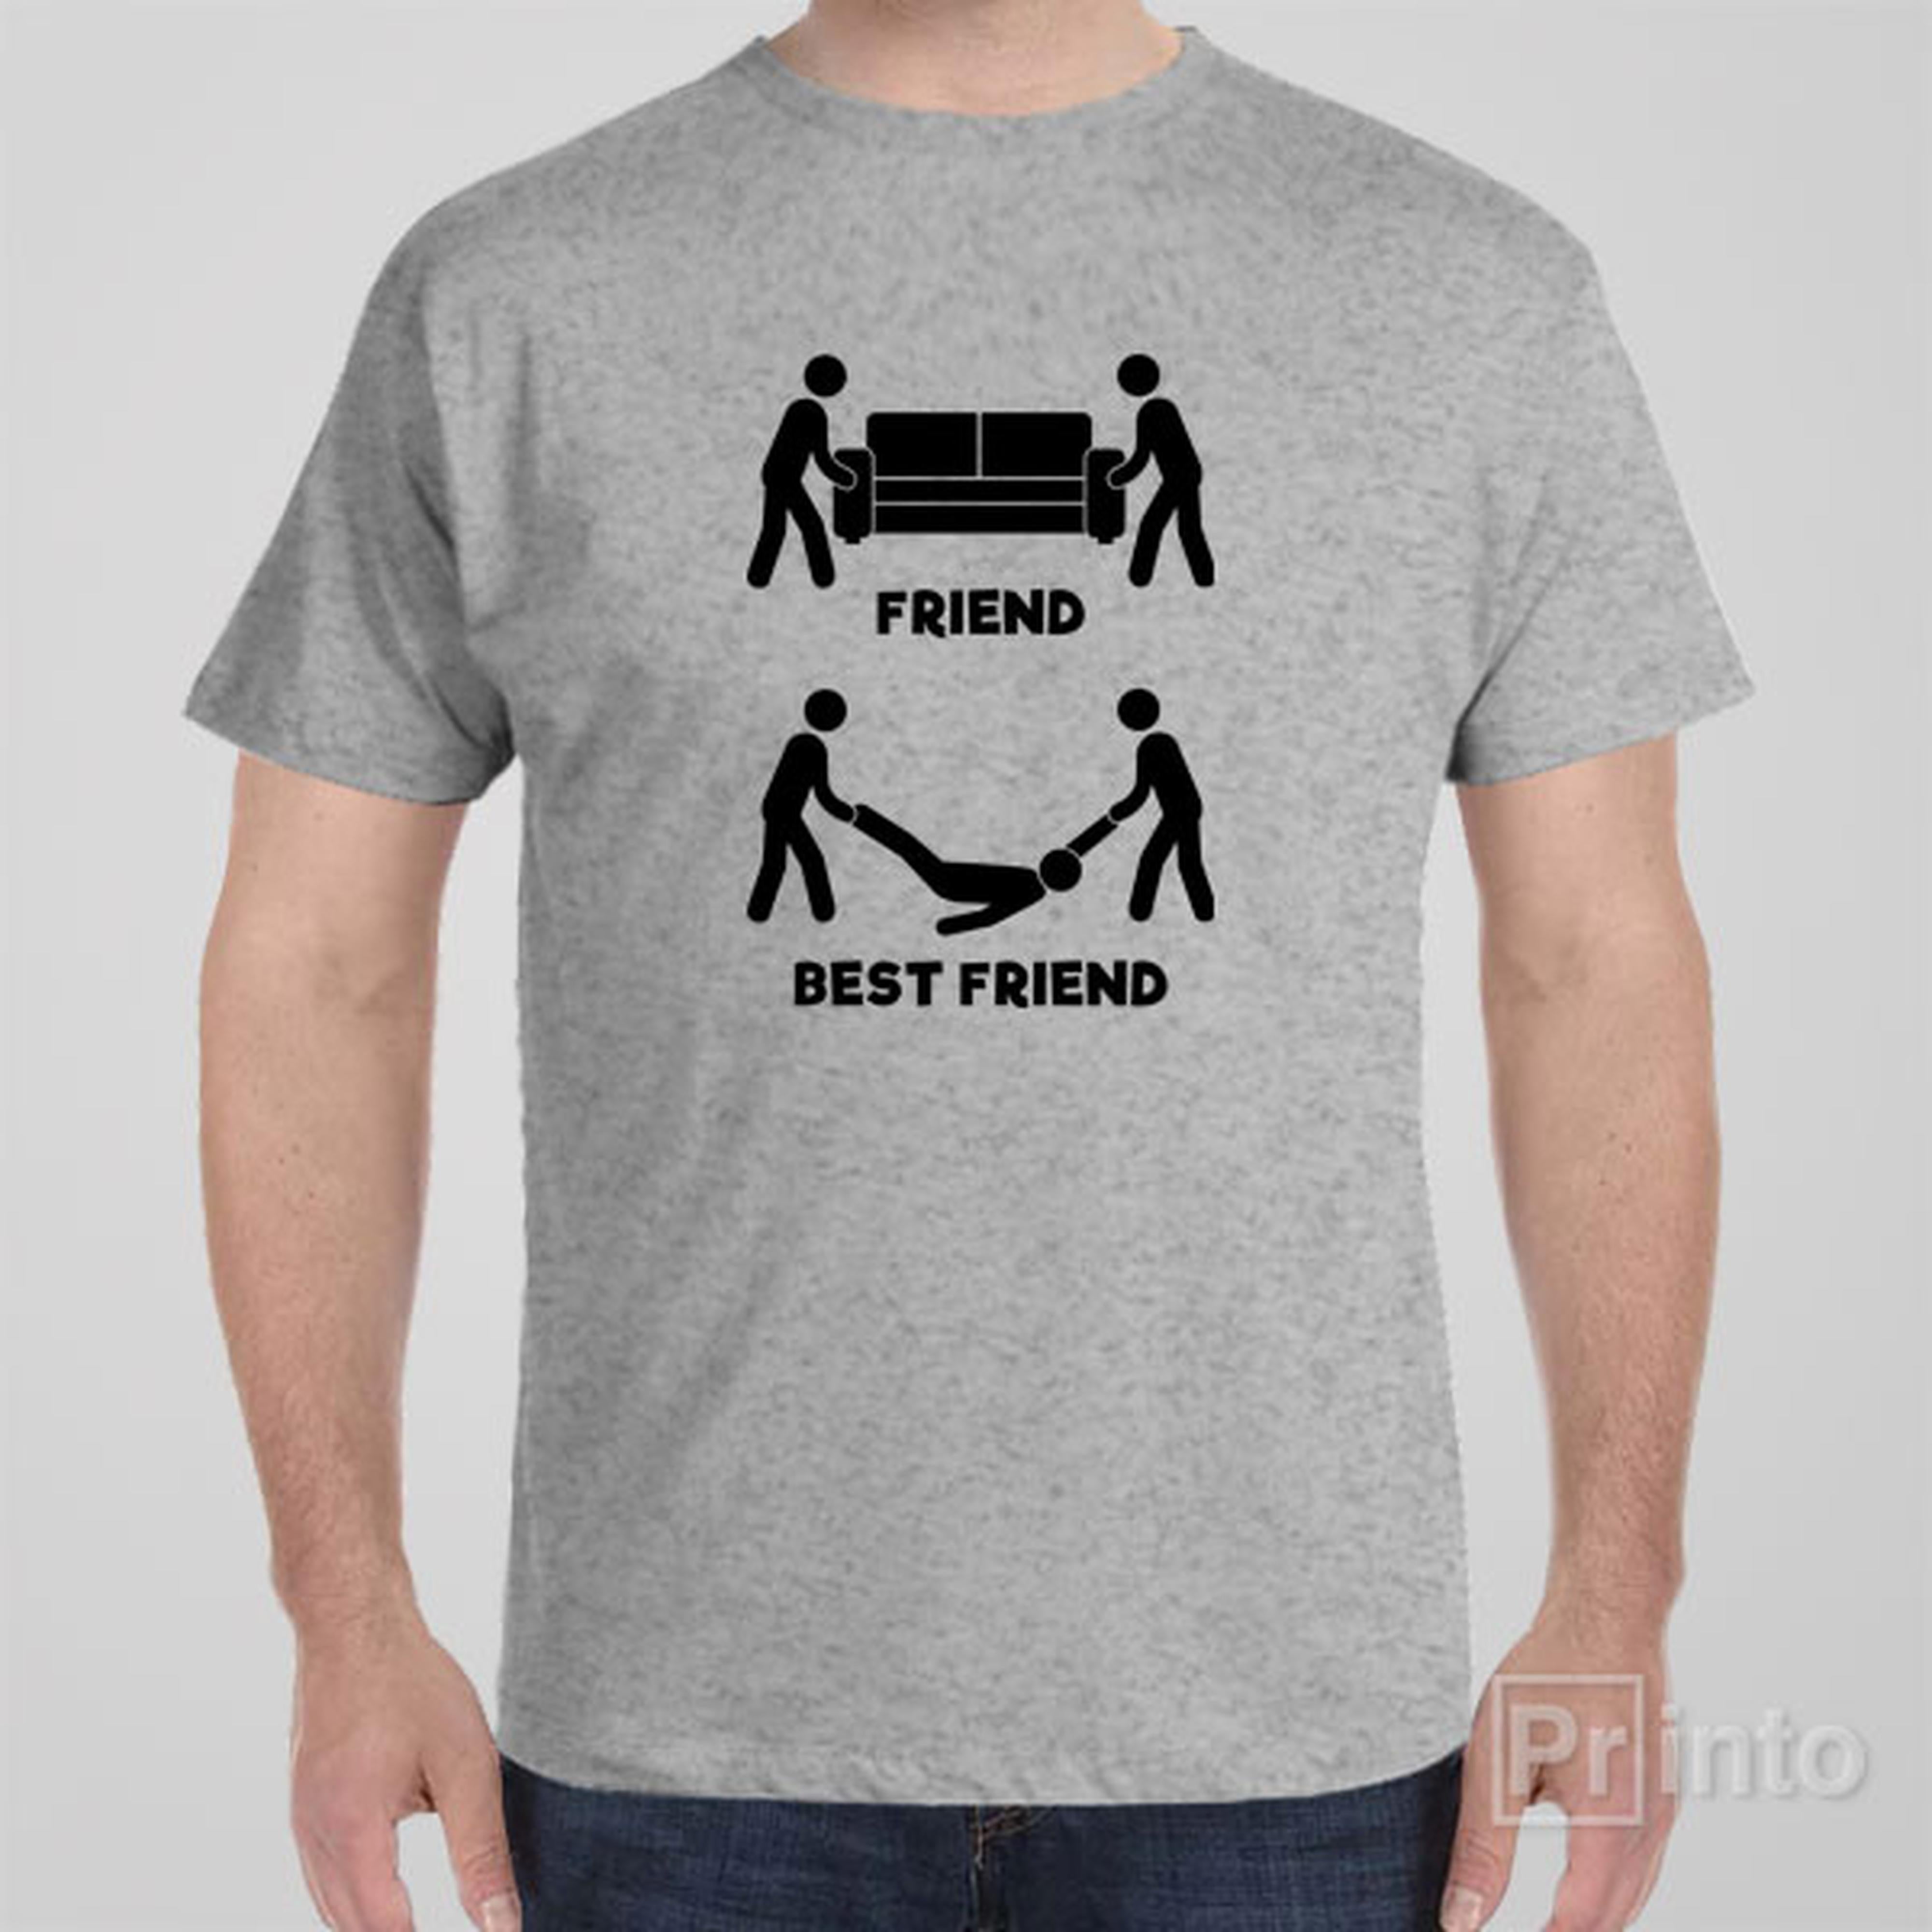 friend-vs-best-friend-t-shirt